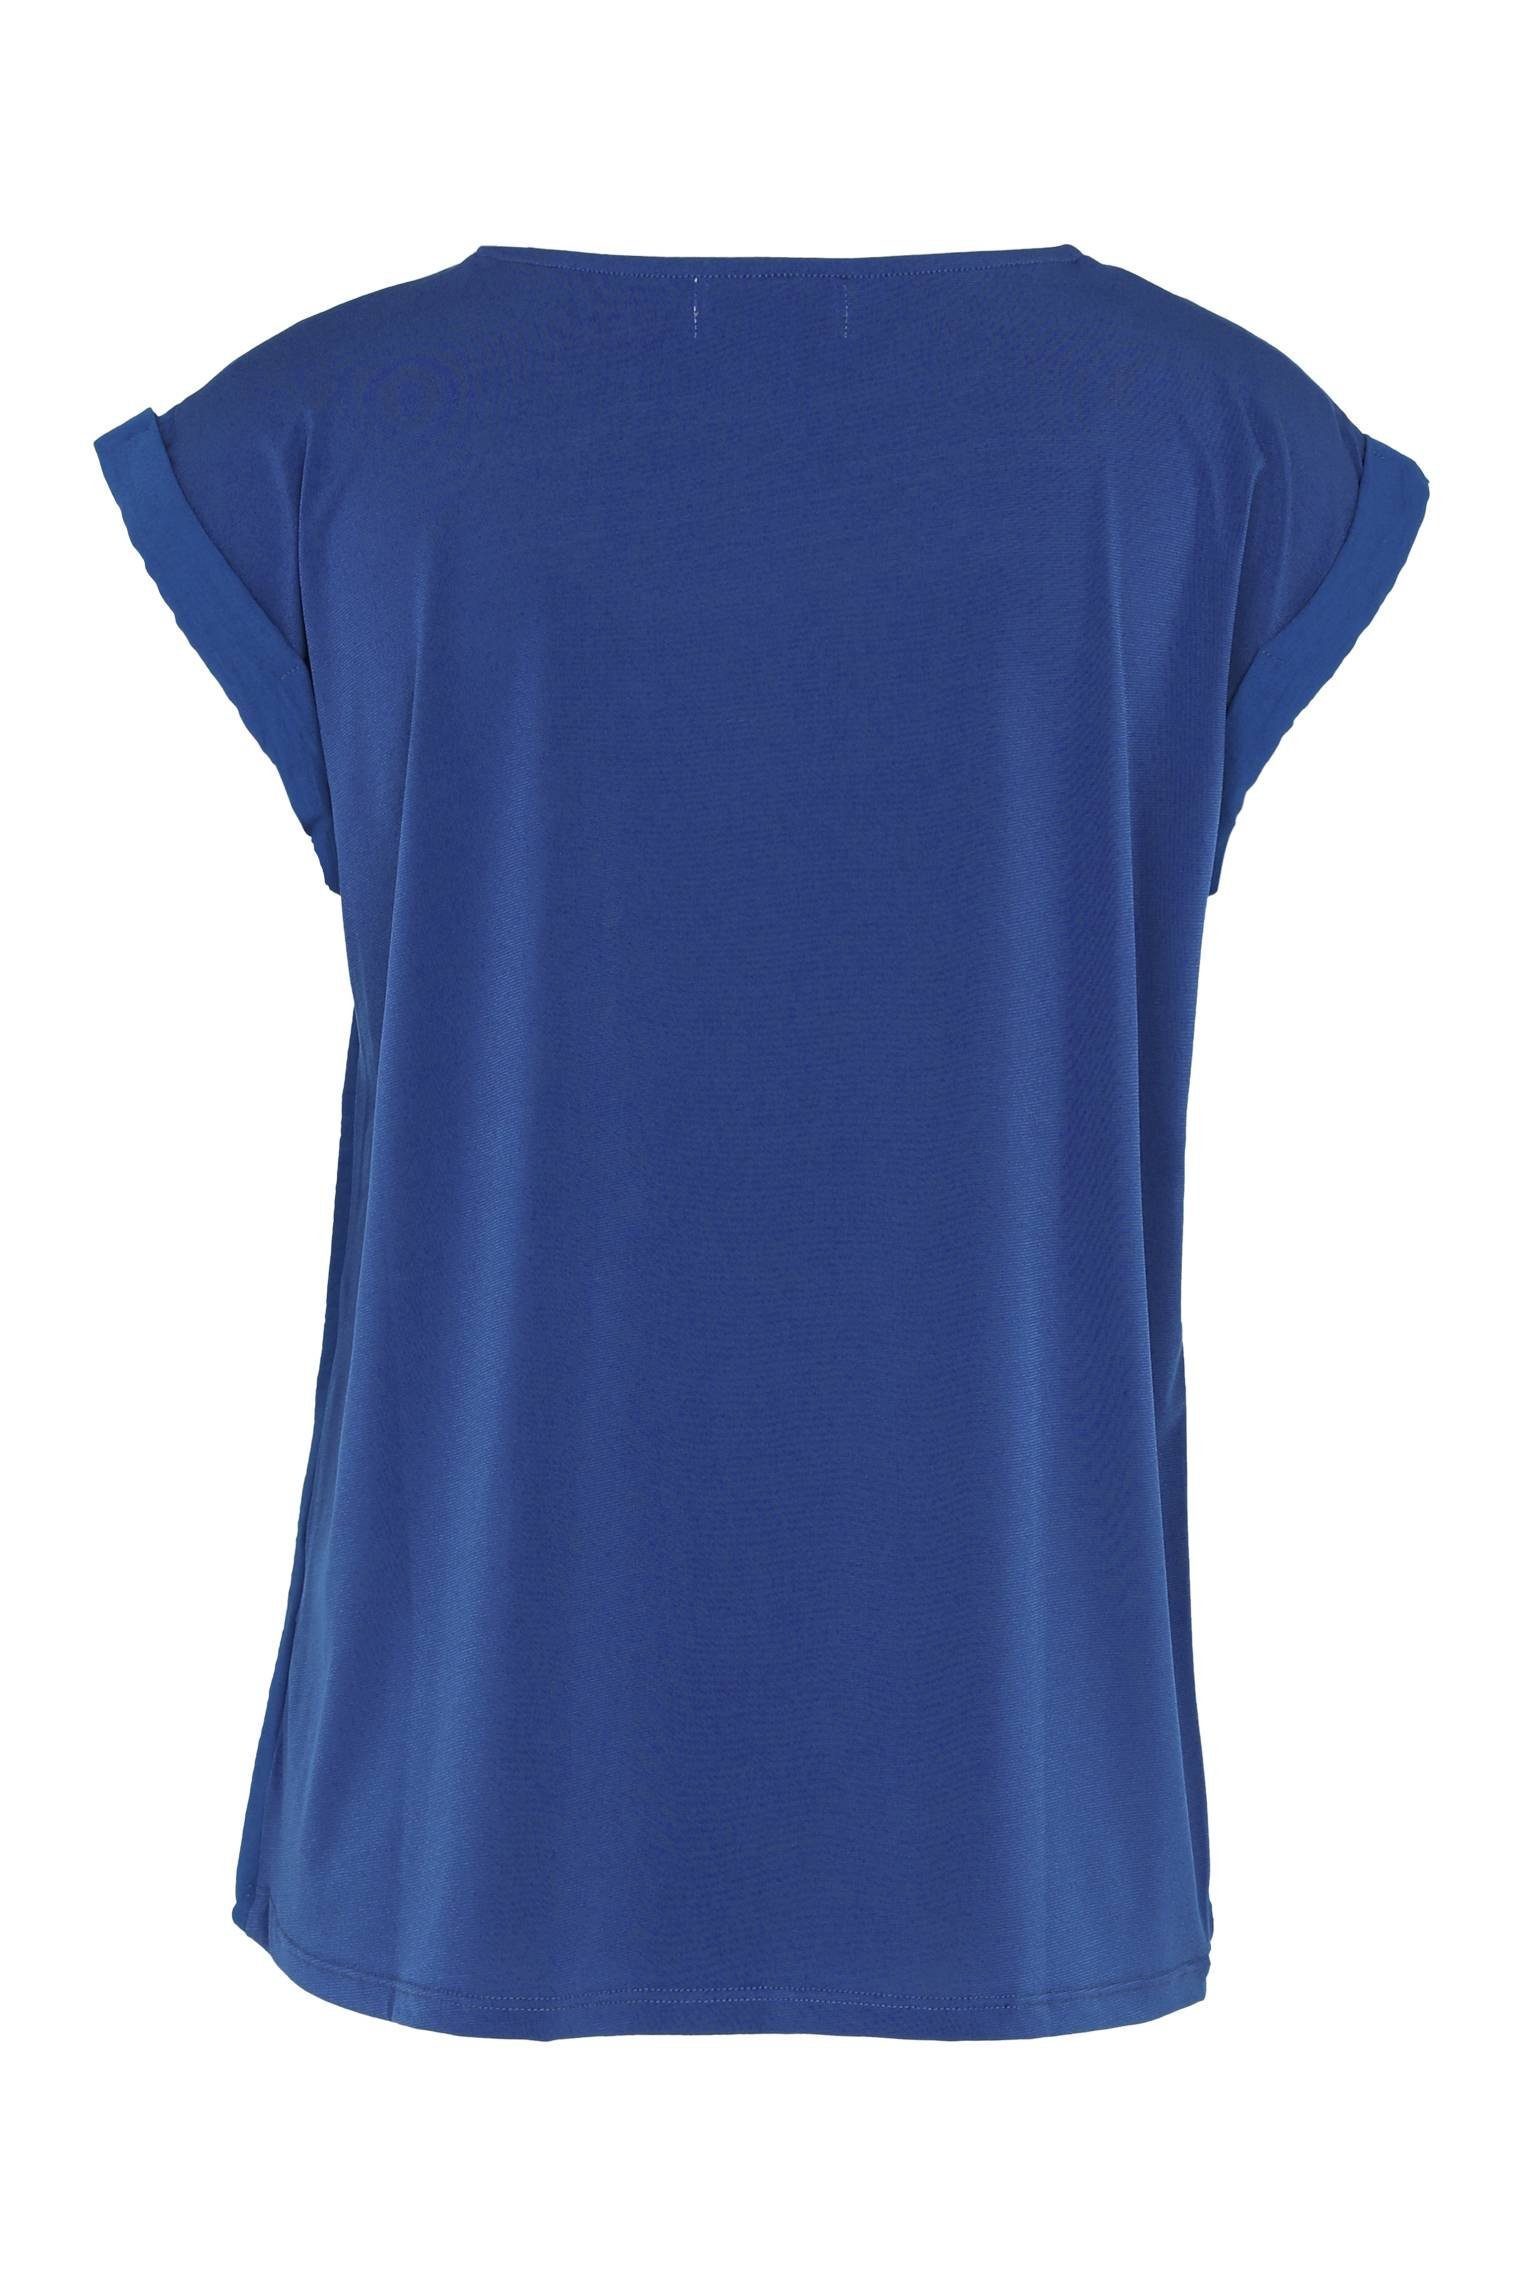 Kragen Bic T-Shirt Unifarbenes Blau Cassis Bearbeitetem Mit T-Shirt